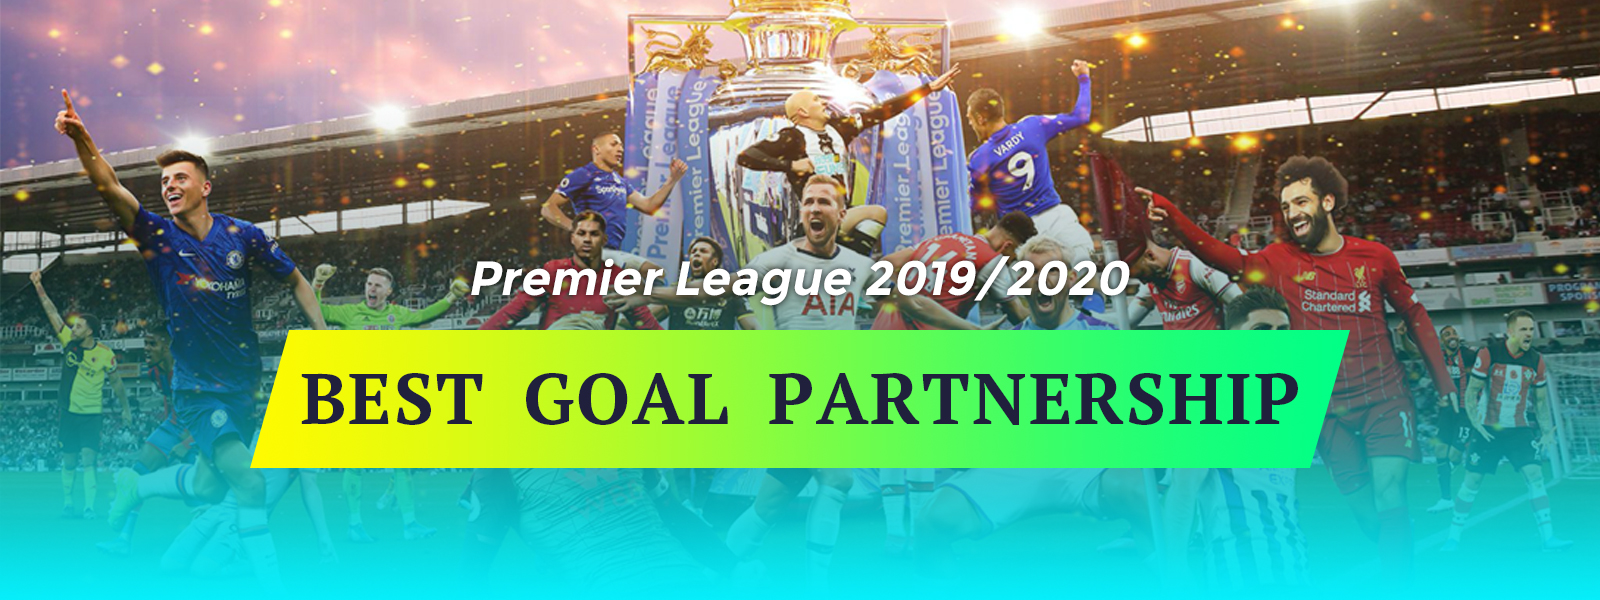 Premier League 2019/2020 - Best Goal Partnership